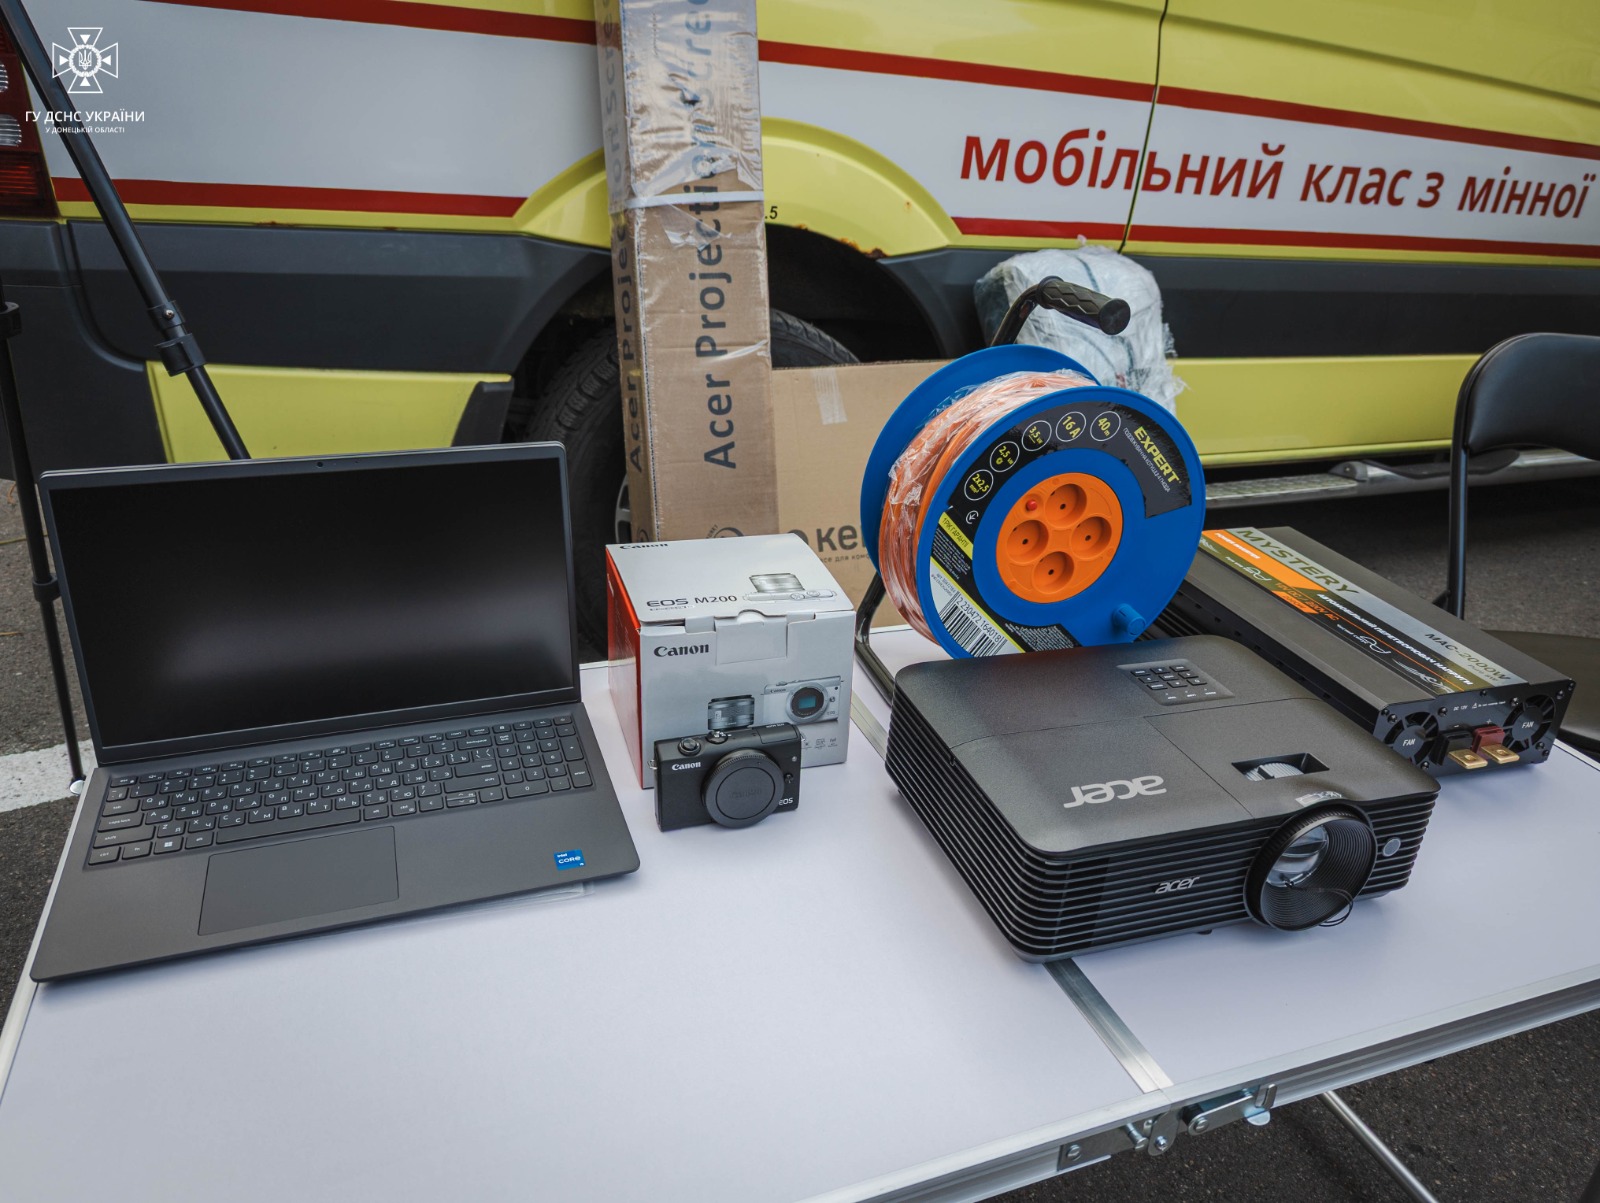 Техніка для мобільного класу мінної безпеки в Донецькій області